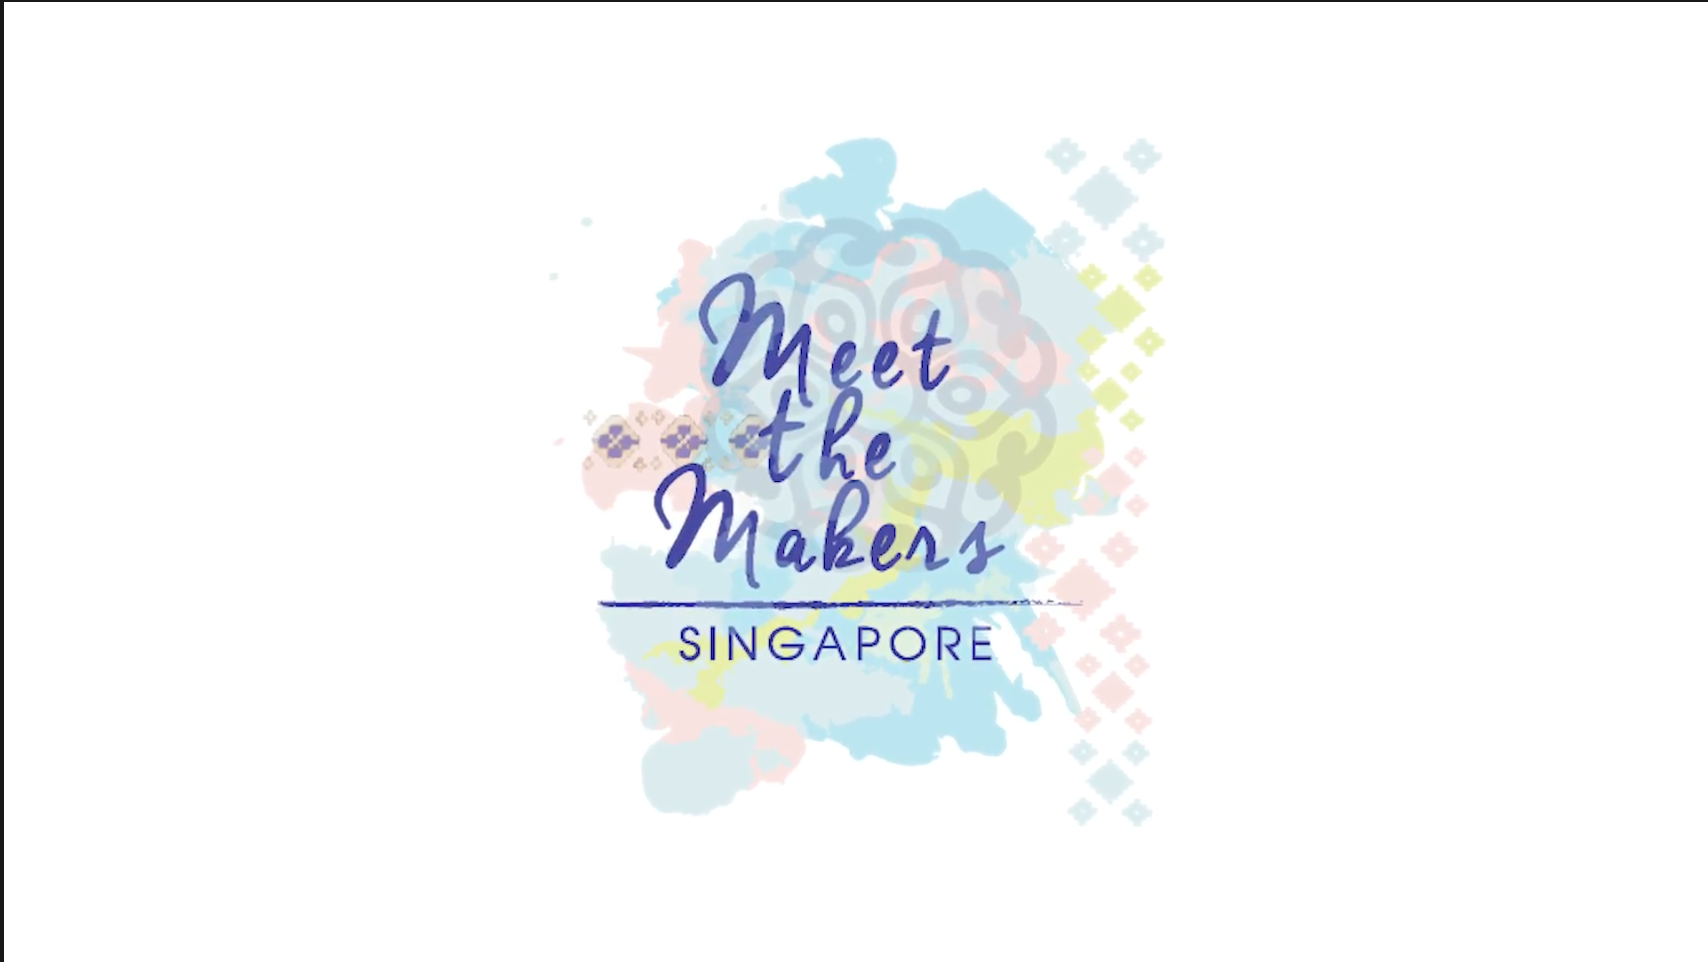 Cinta Bumi Artisans | Meet The Makers Singapore 2017